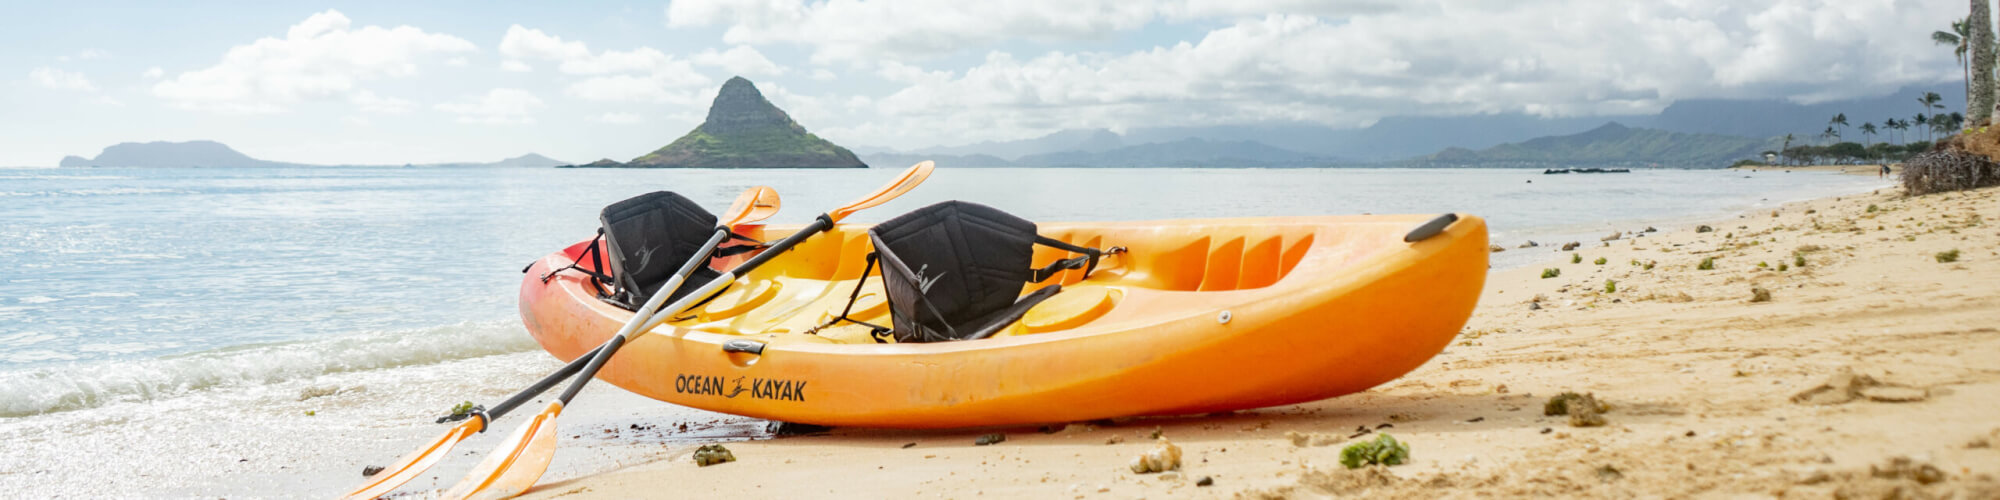 Kayak Rental at Kualoa Regional Park